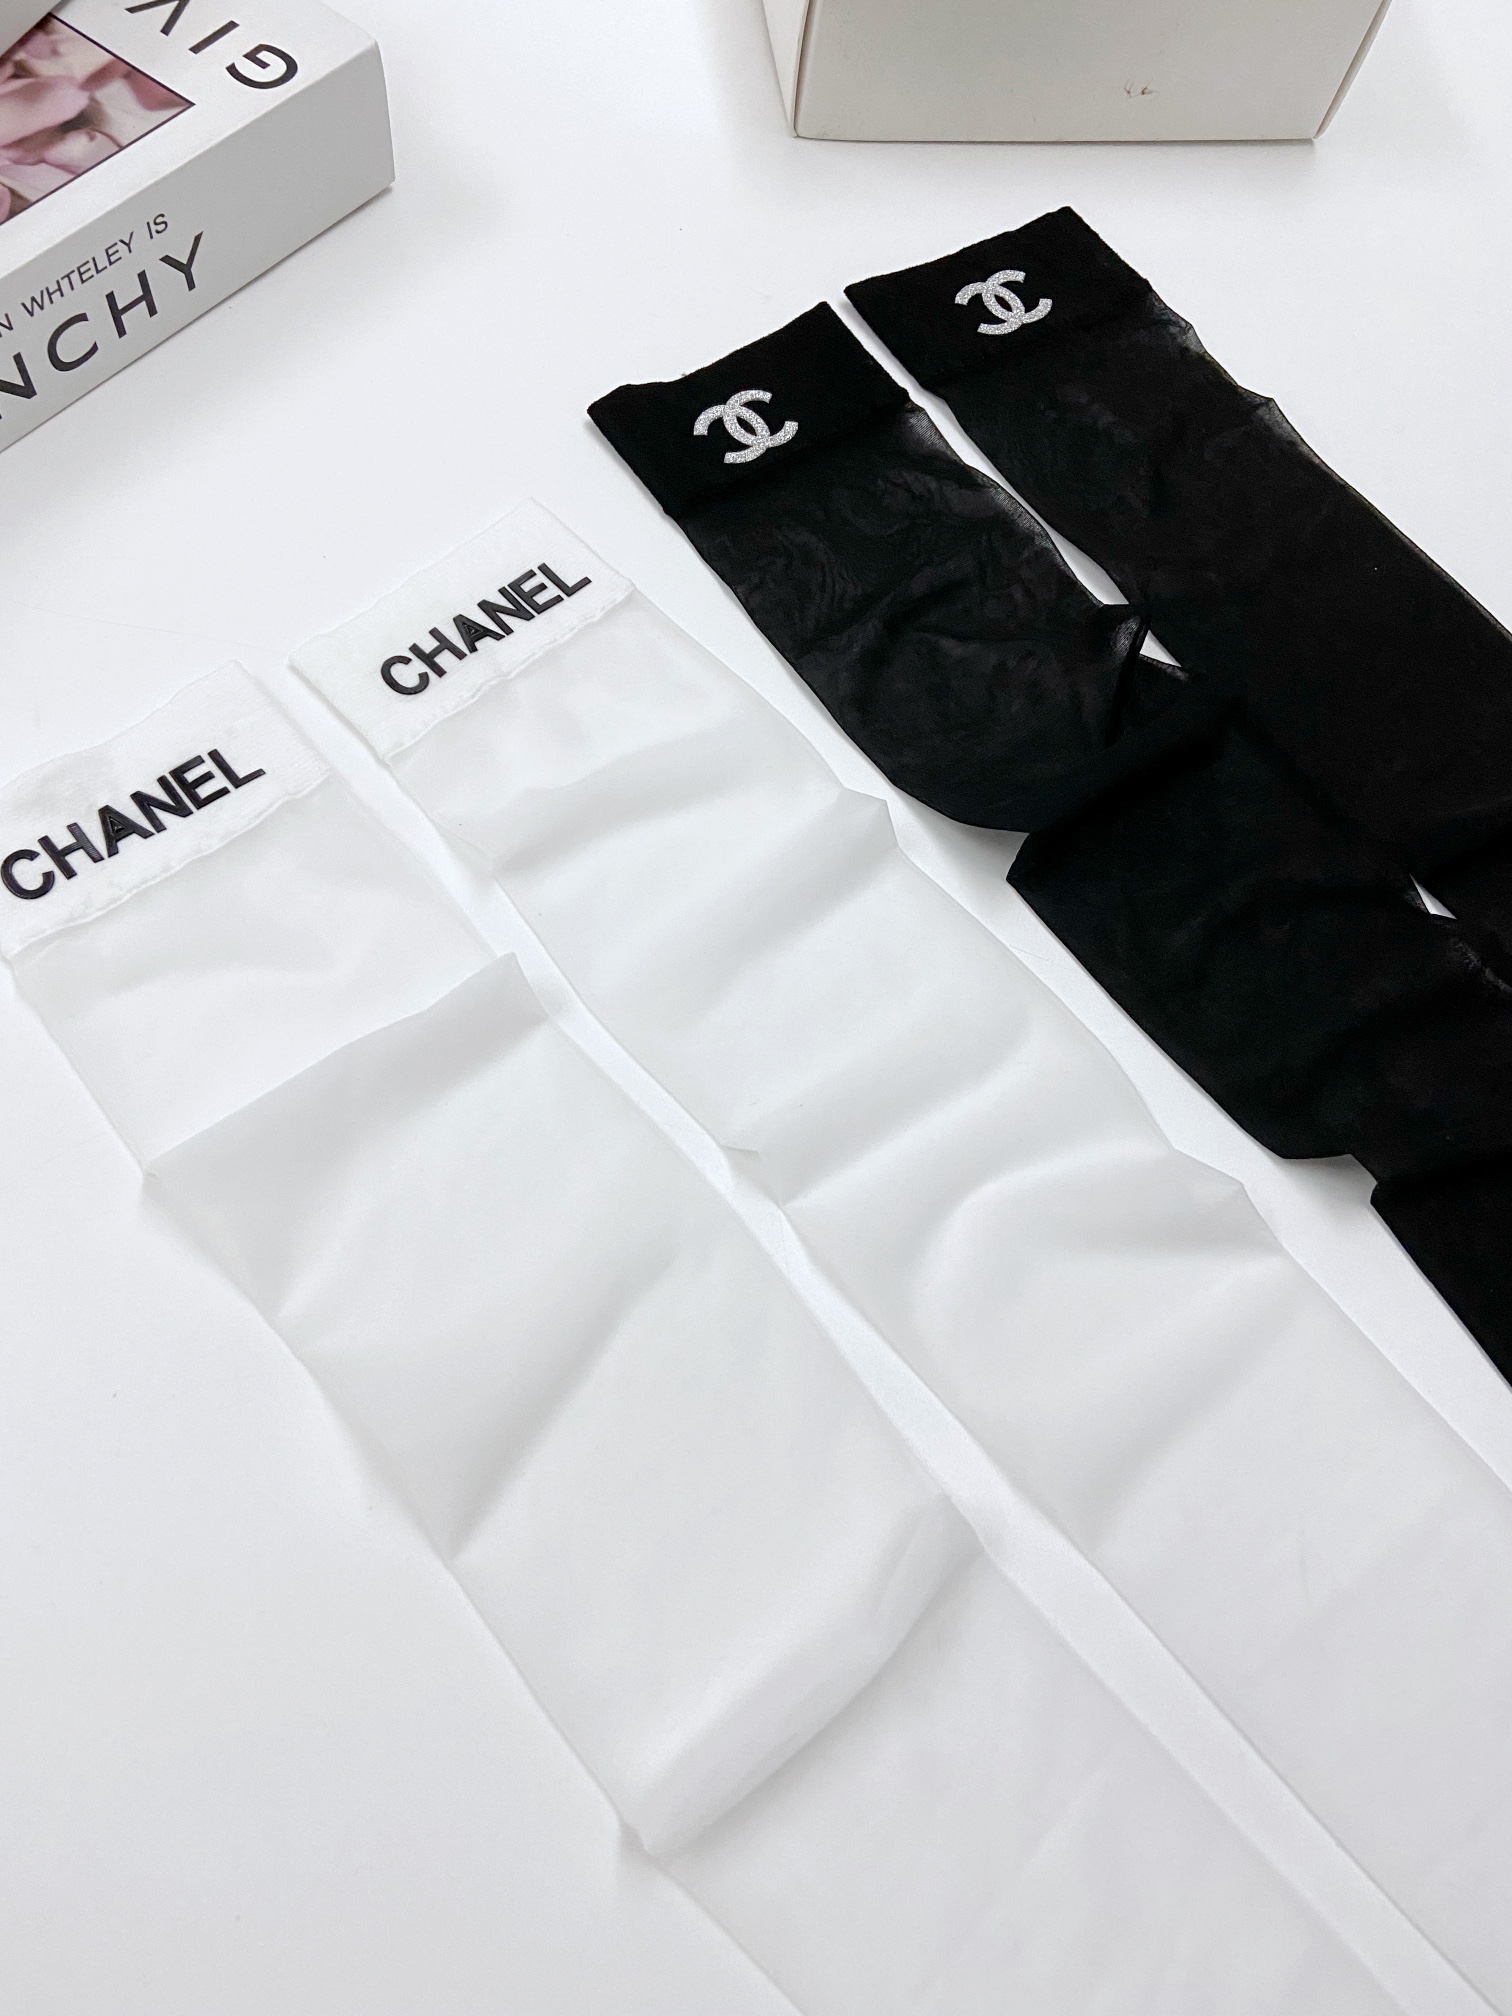 配包装一盒二双Chanel香奈儿爆款卡丝丝袜中筒袜高版本好看到爆炸夏季薄款欧美大牌中筒袜潮人必不能少的专